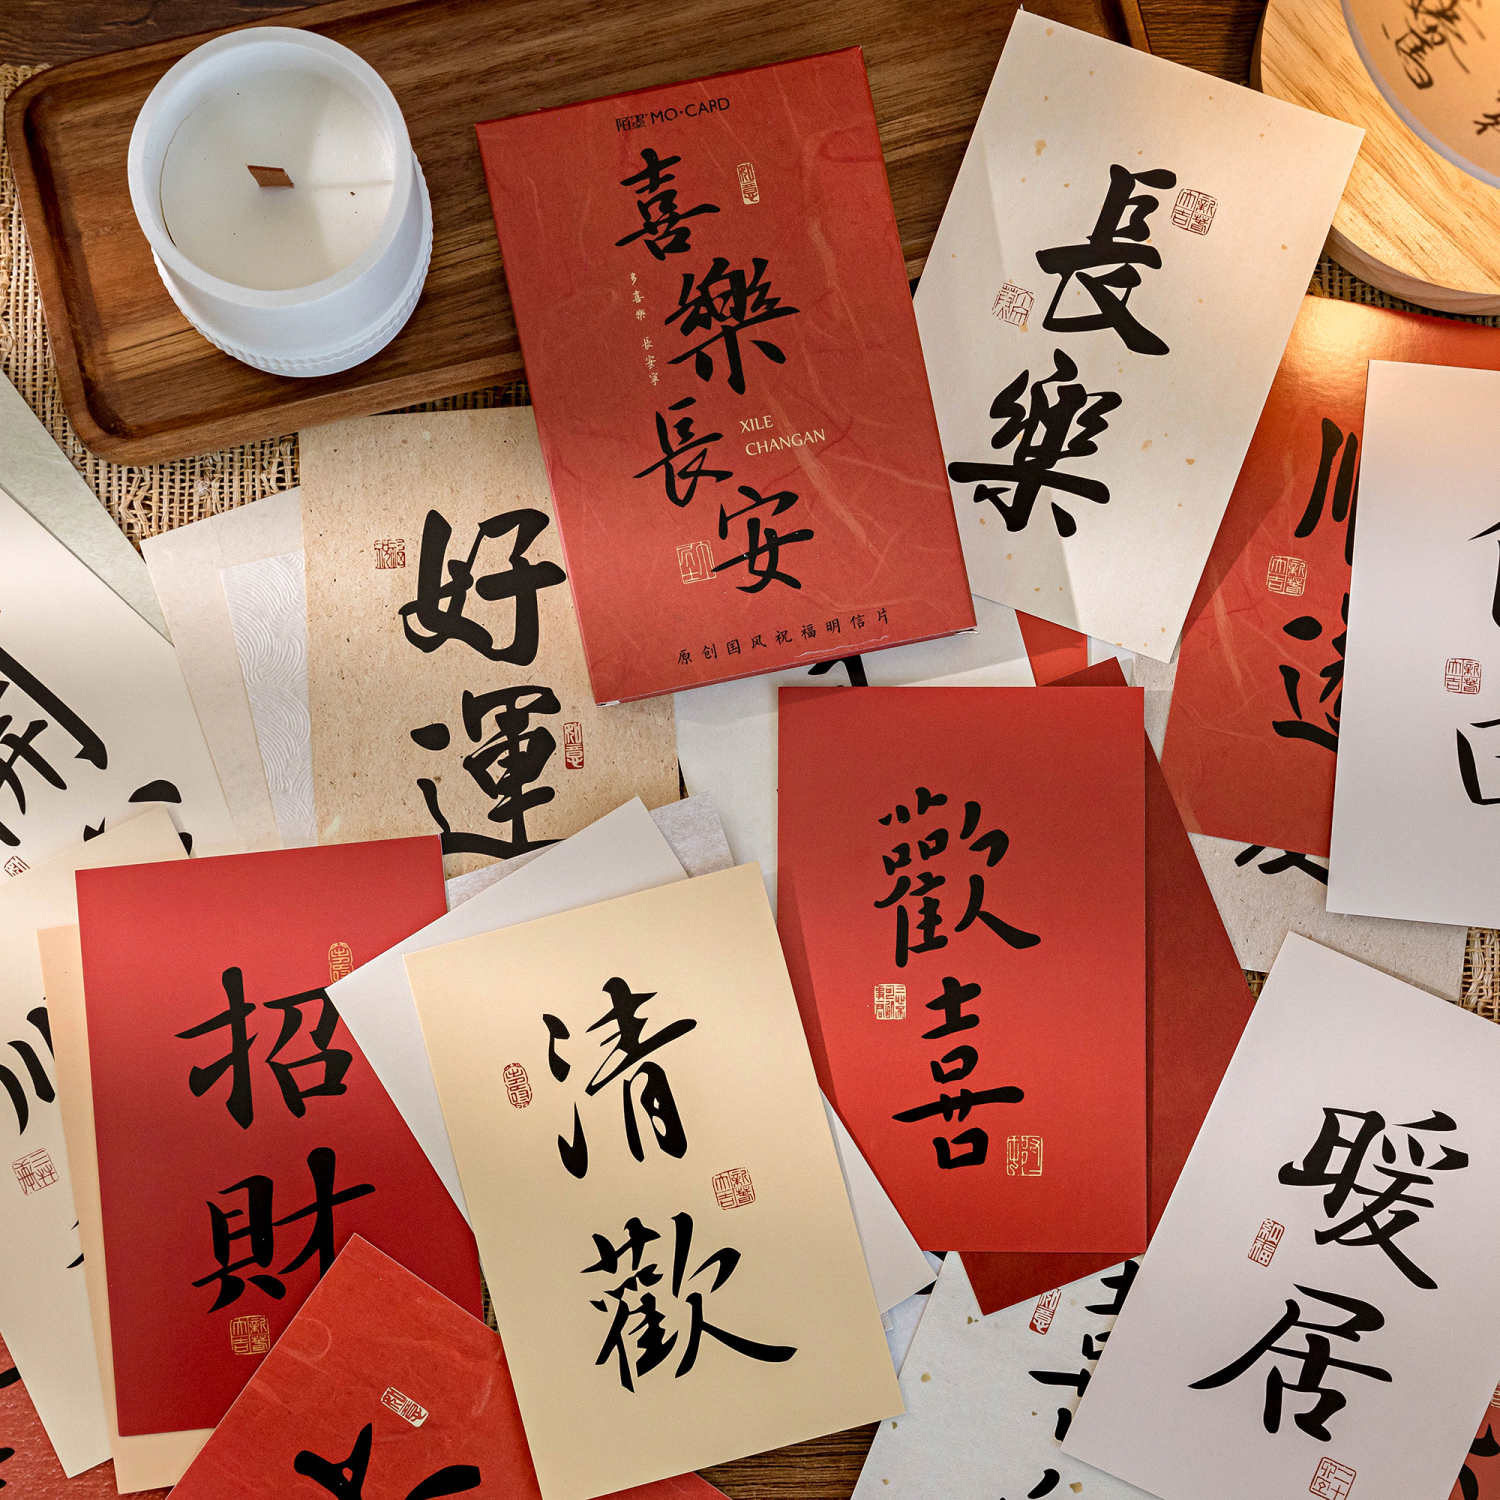 喜乐长安明信片祝福文字新年元旦节日气氛贺卡中国风书法卡片装饰